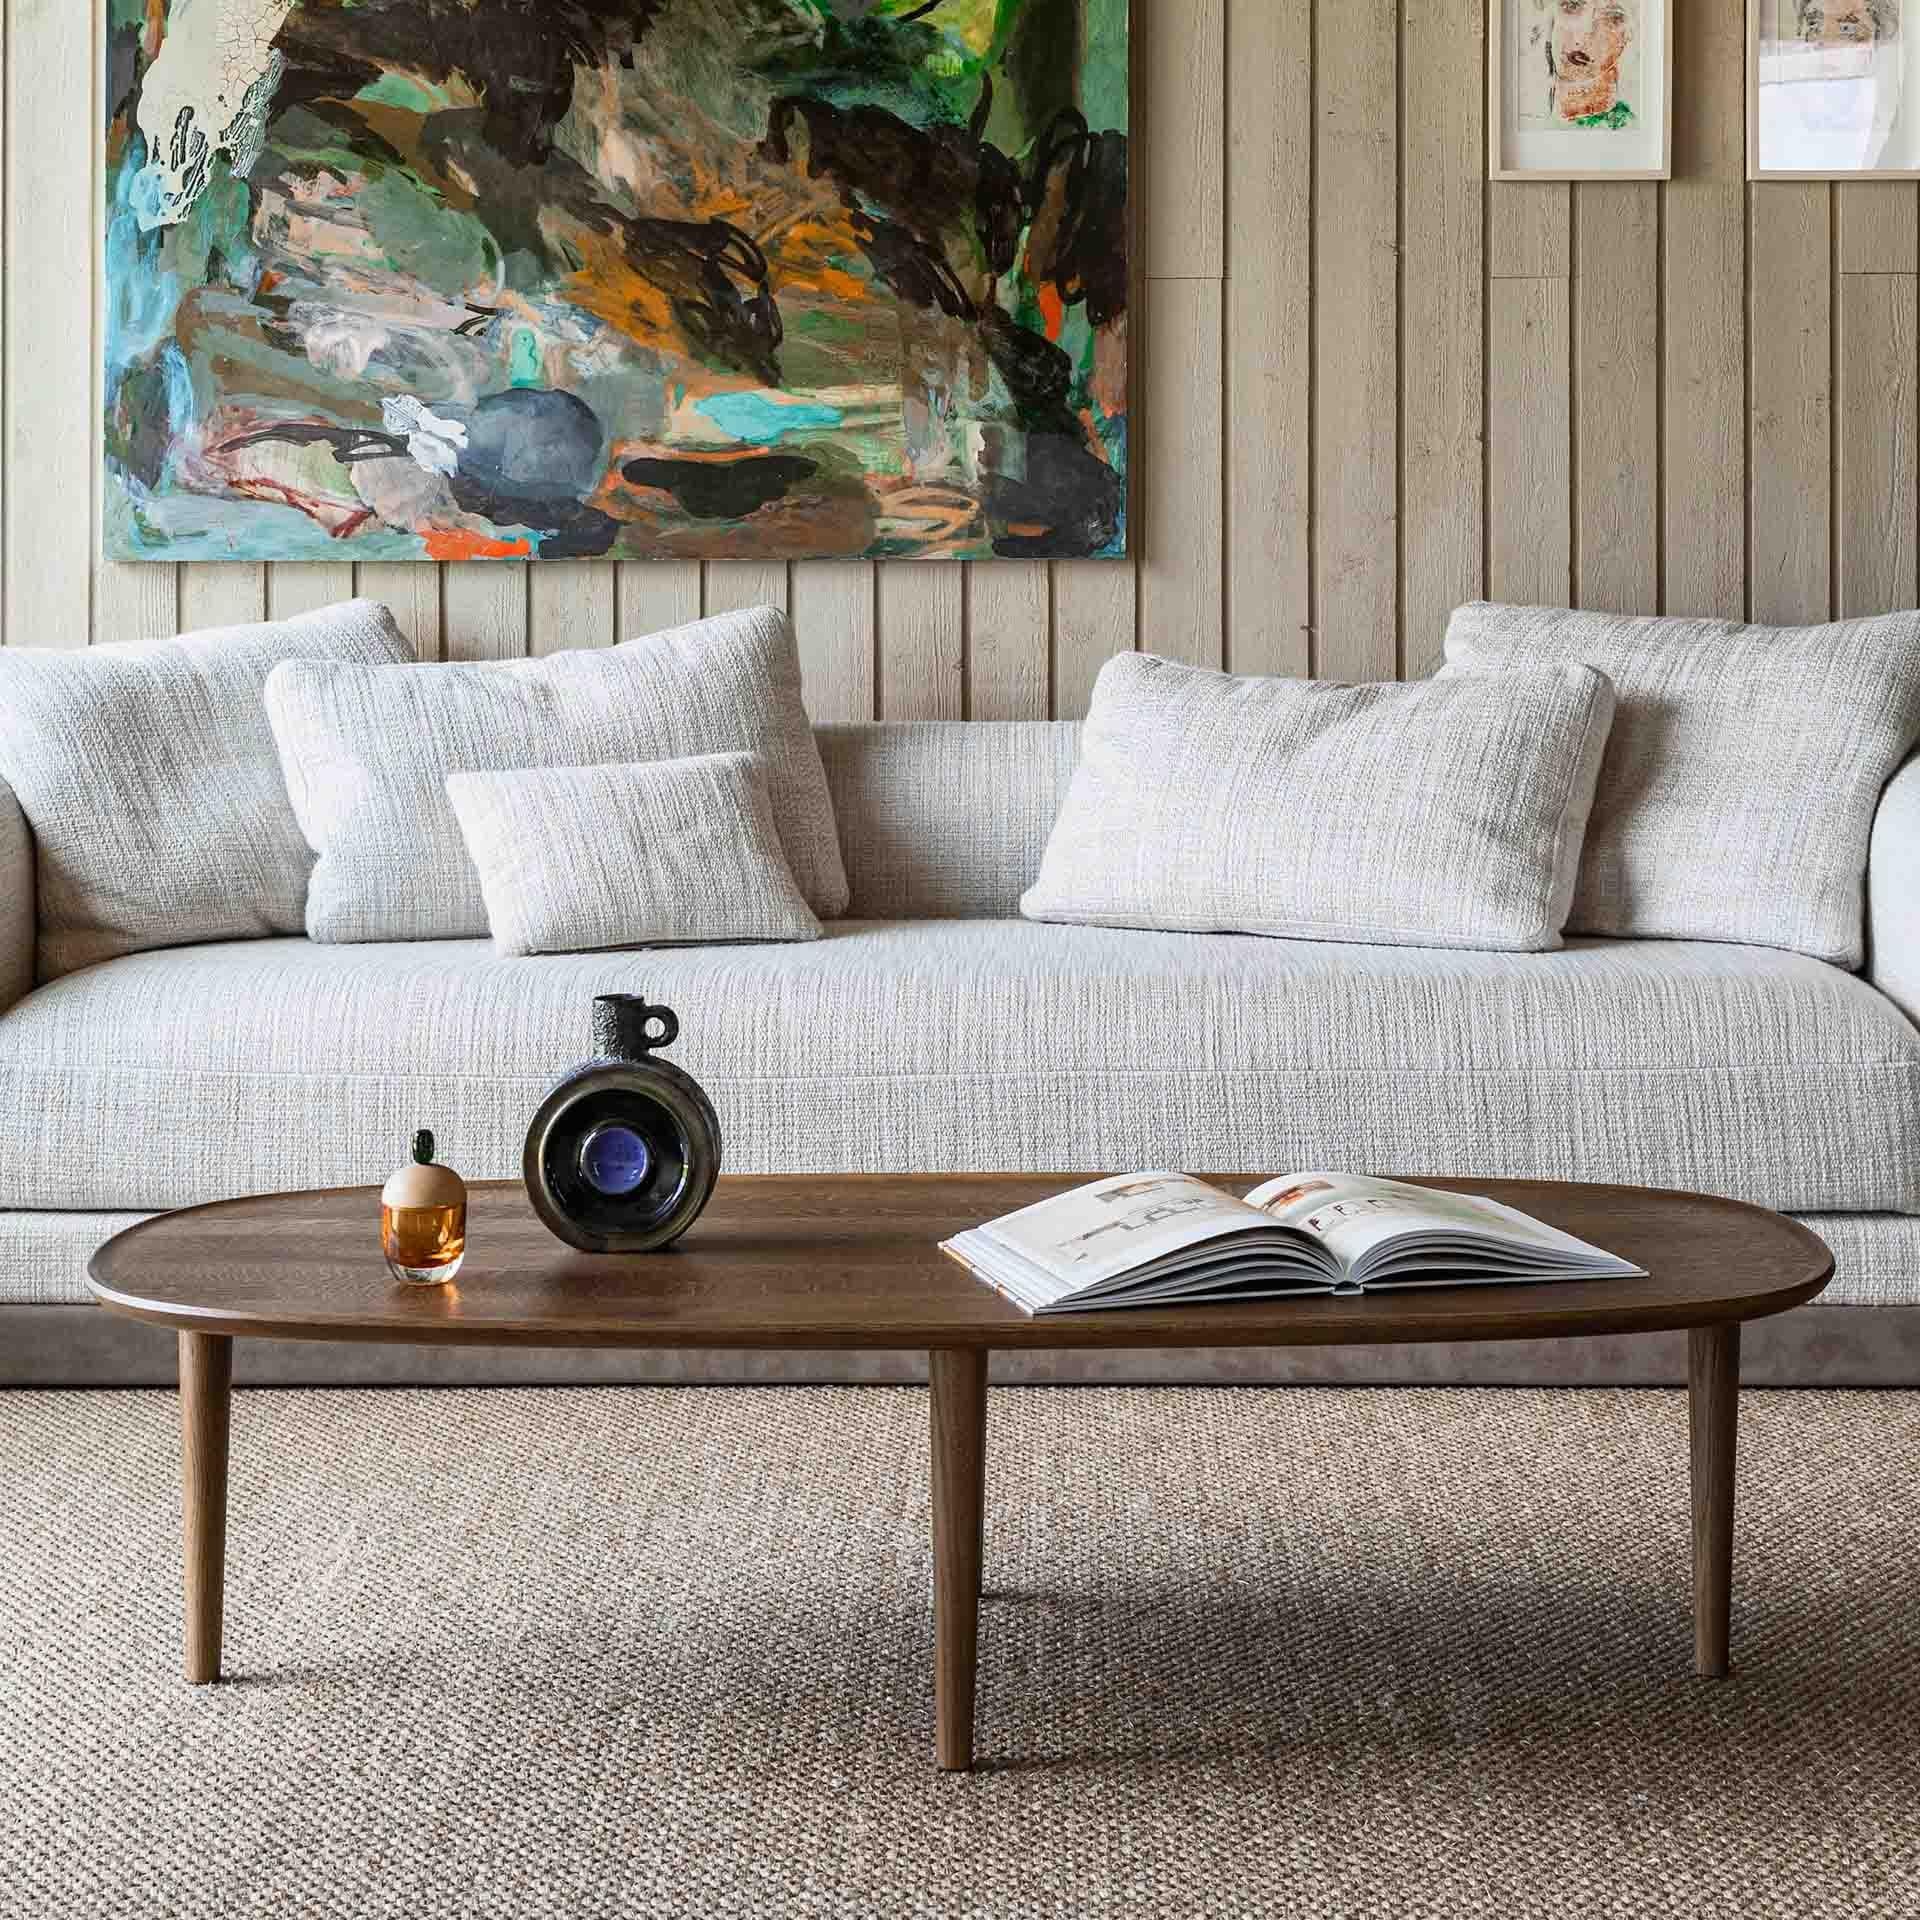 Die Fiori Collection wurde von den Gründern des Poiat Studios, Timo Mikkonen und Antti Rouhunkoski, in Collaboration mit dem Tischlermeister und Designer Antrei Hartikainen entworfen und besteht aus einer Reihe von Tischen.  und eine Bodenskulptur.